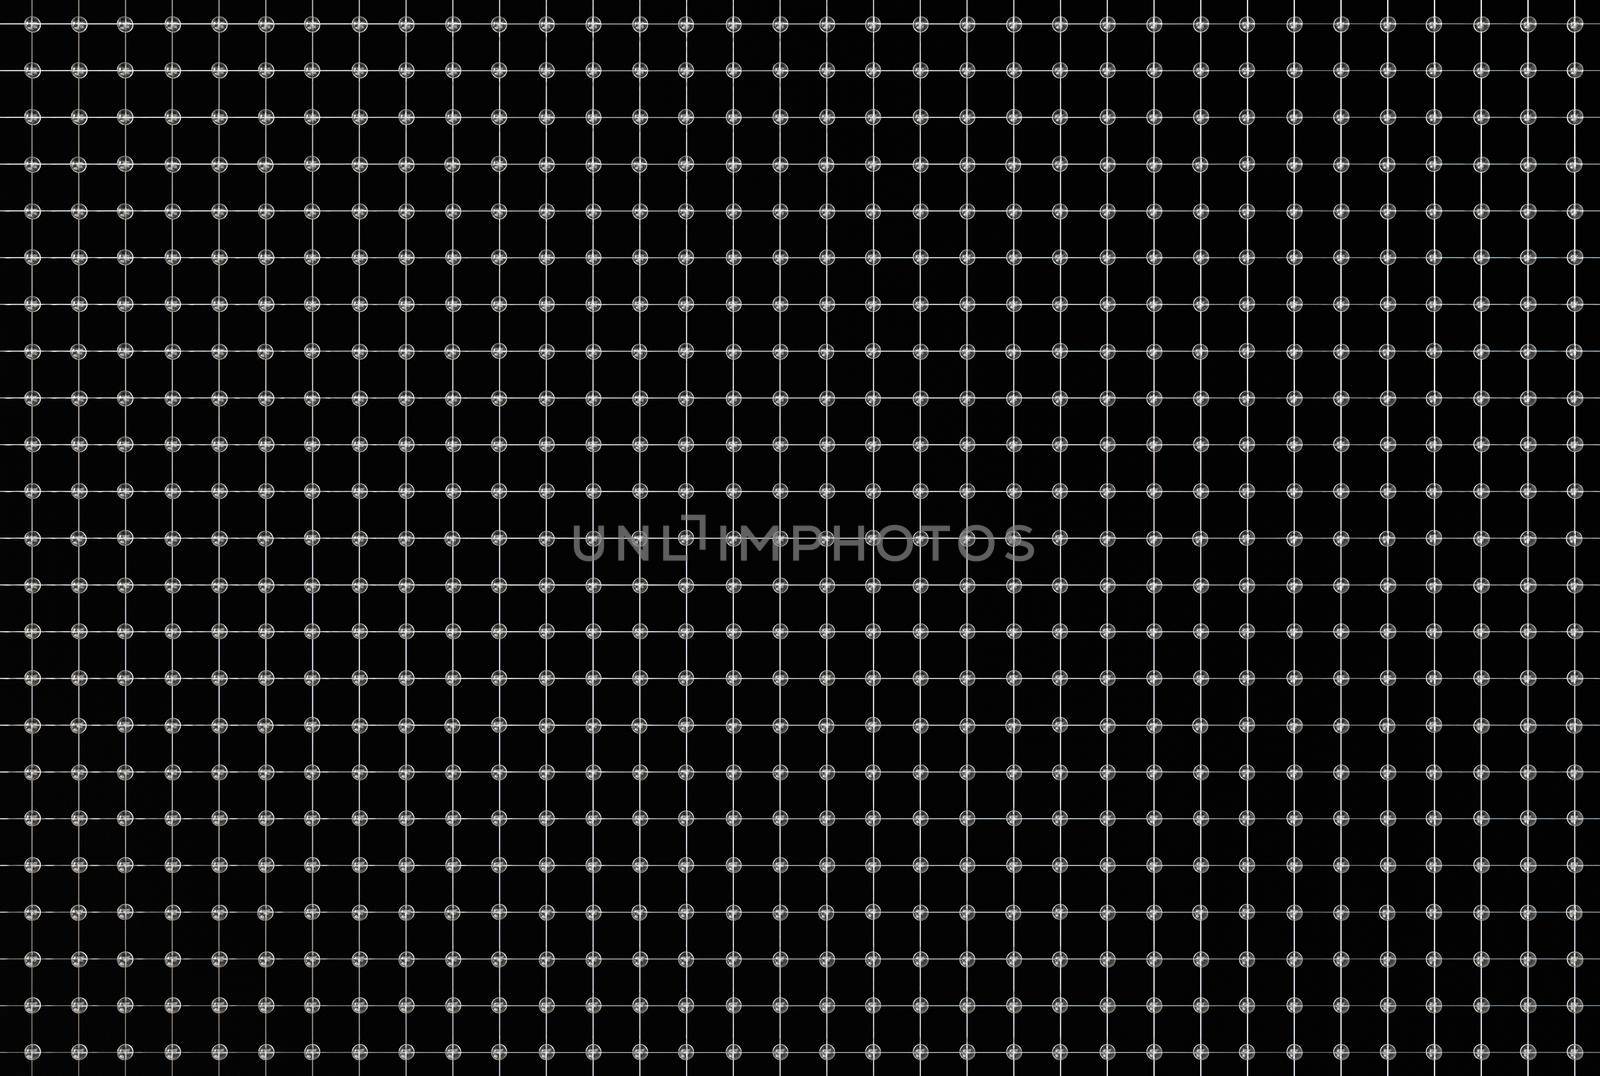 Black-and-white digital grid rendering. 3d render